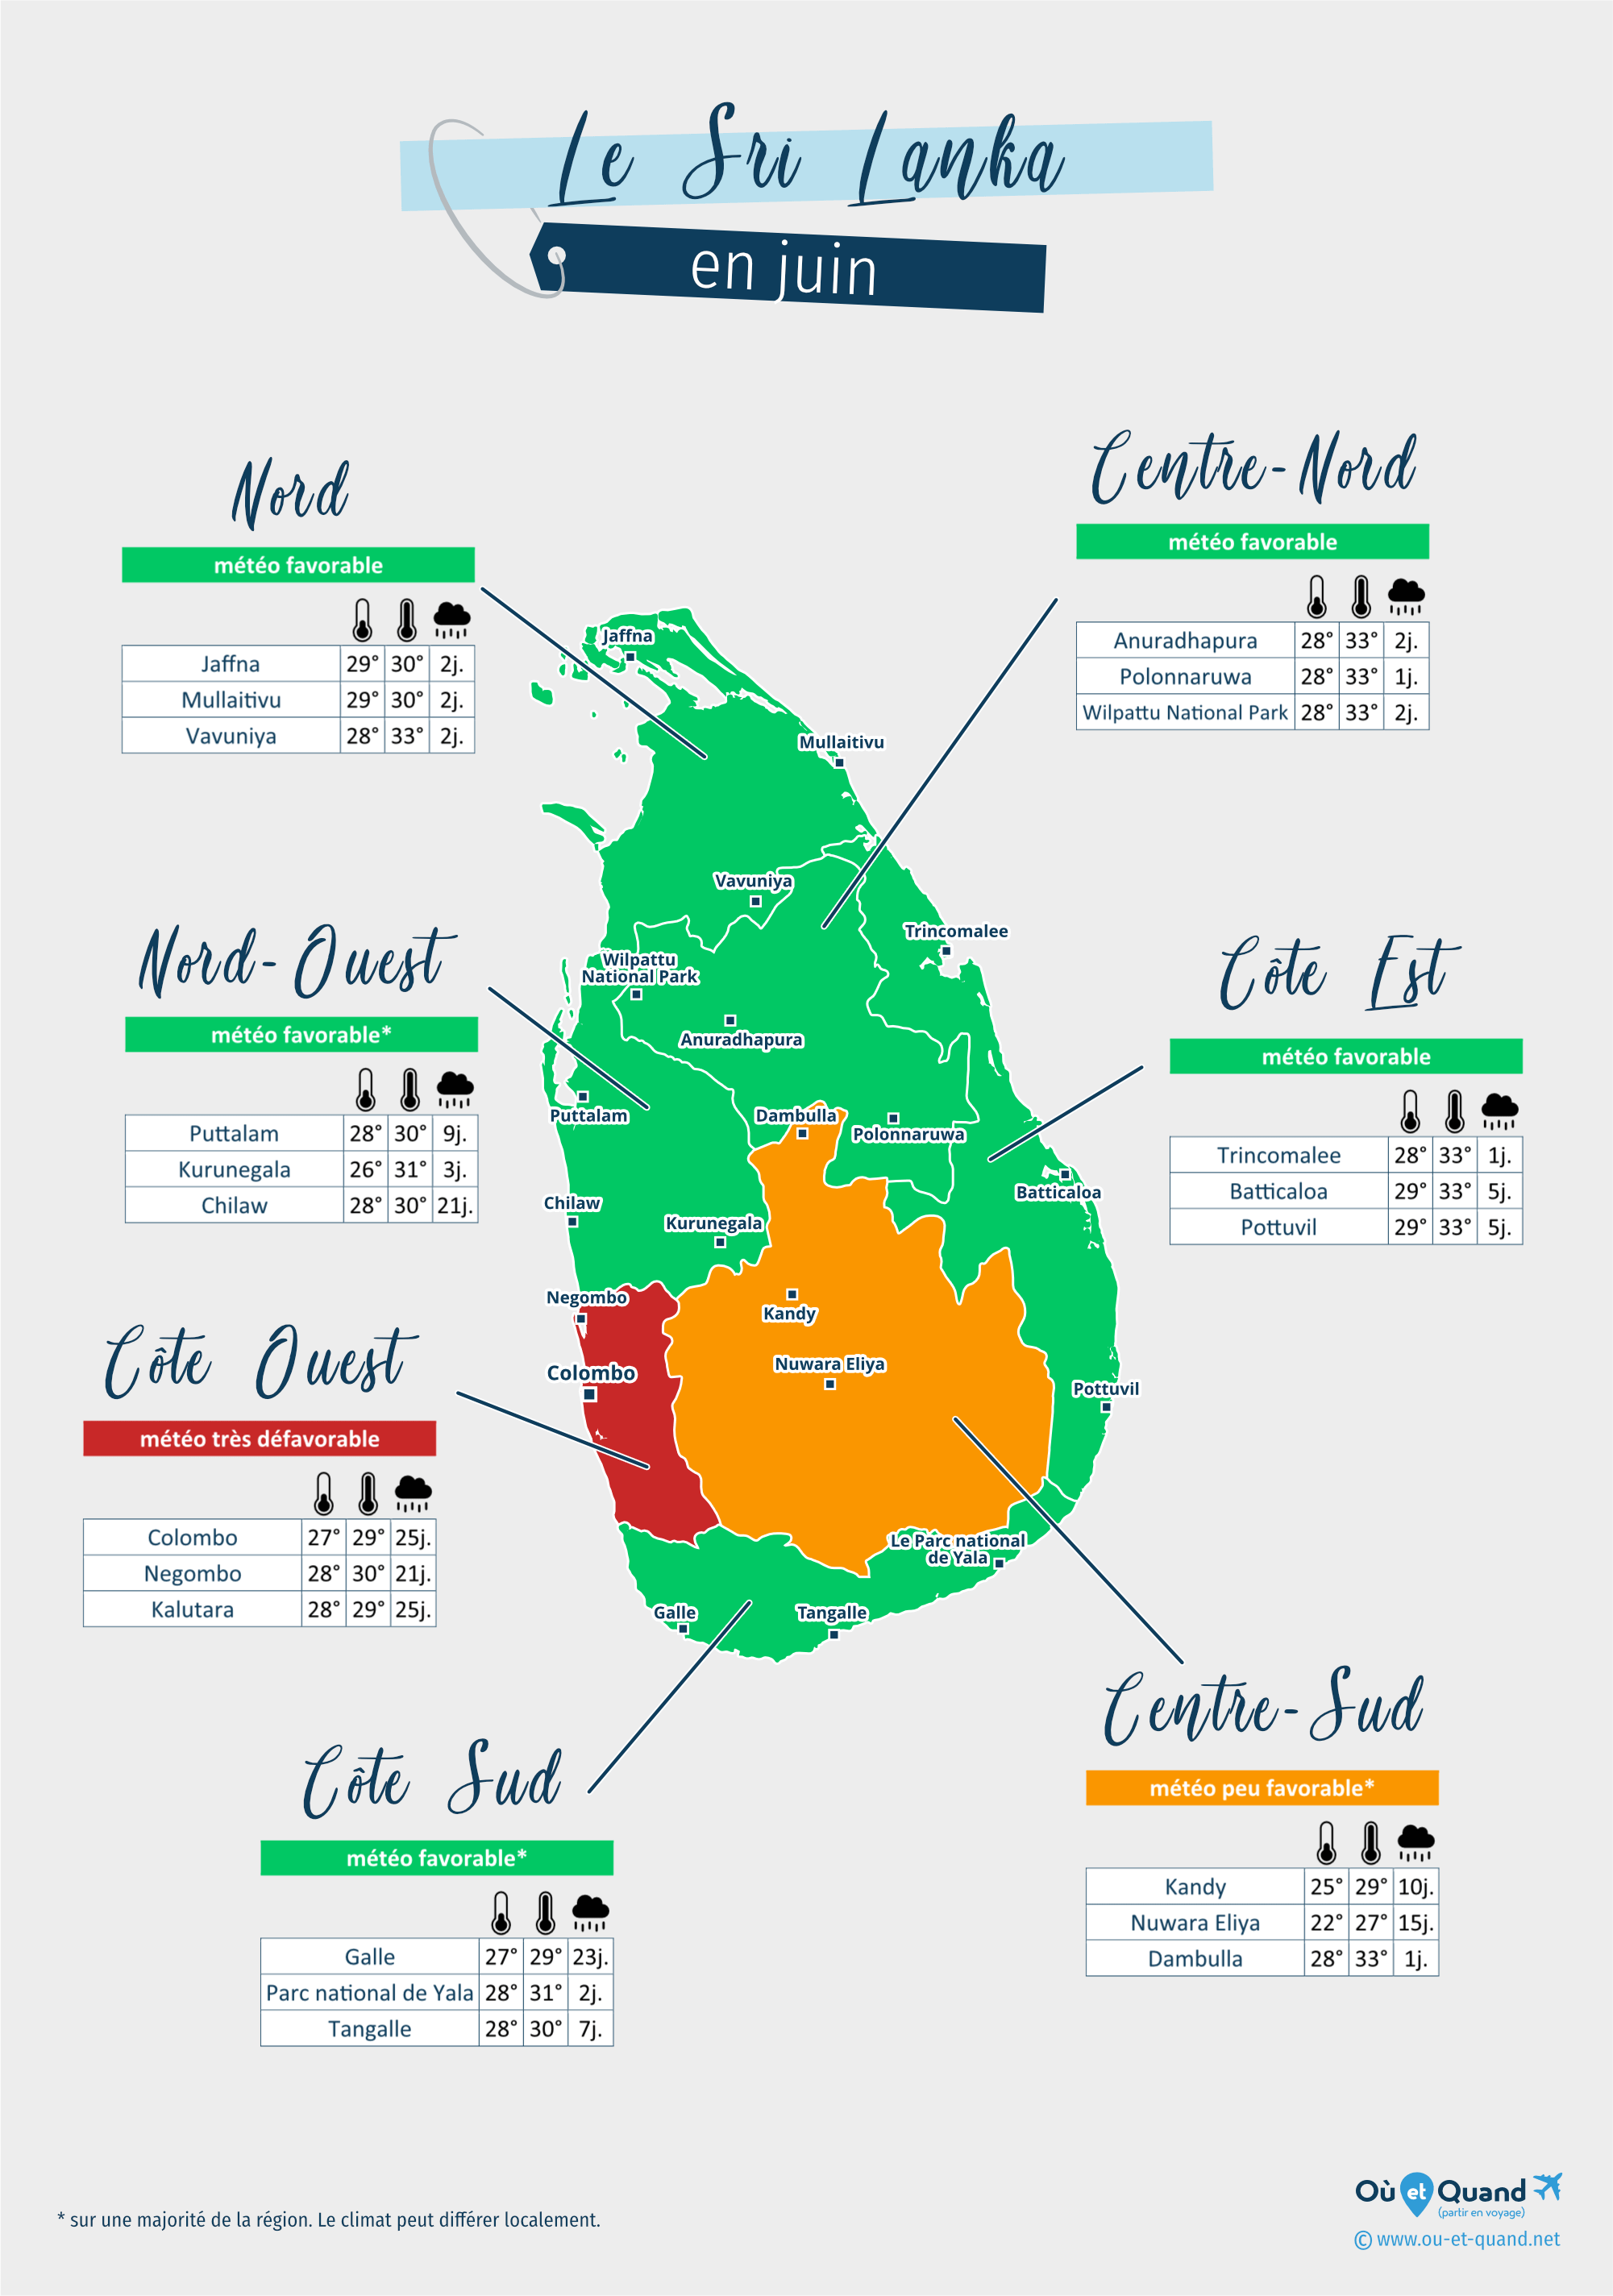 Carte de la météo en juin dans les régions du Sri Lanka